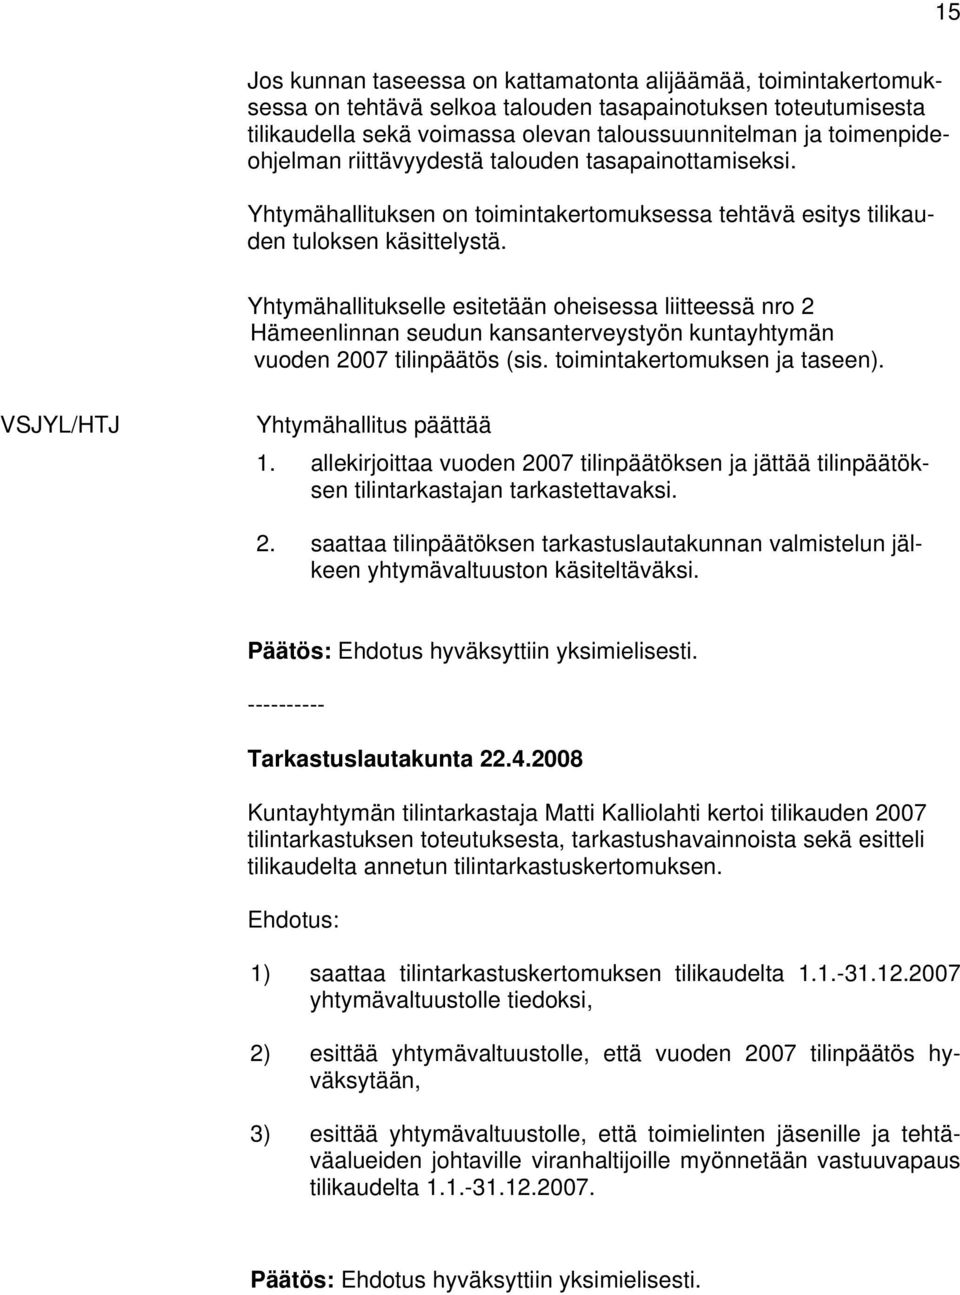 Yhtymähallitukselle esitetään oheisessa liitteessä nro 2 Hämeenlinnan seudun kansanterveystyön kuntayhtymän vuoden 2007 tilinpäätös (sis. toimintakertomuksen ja taseen).